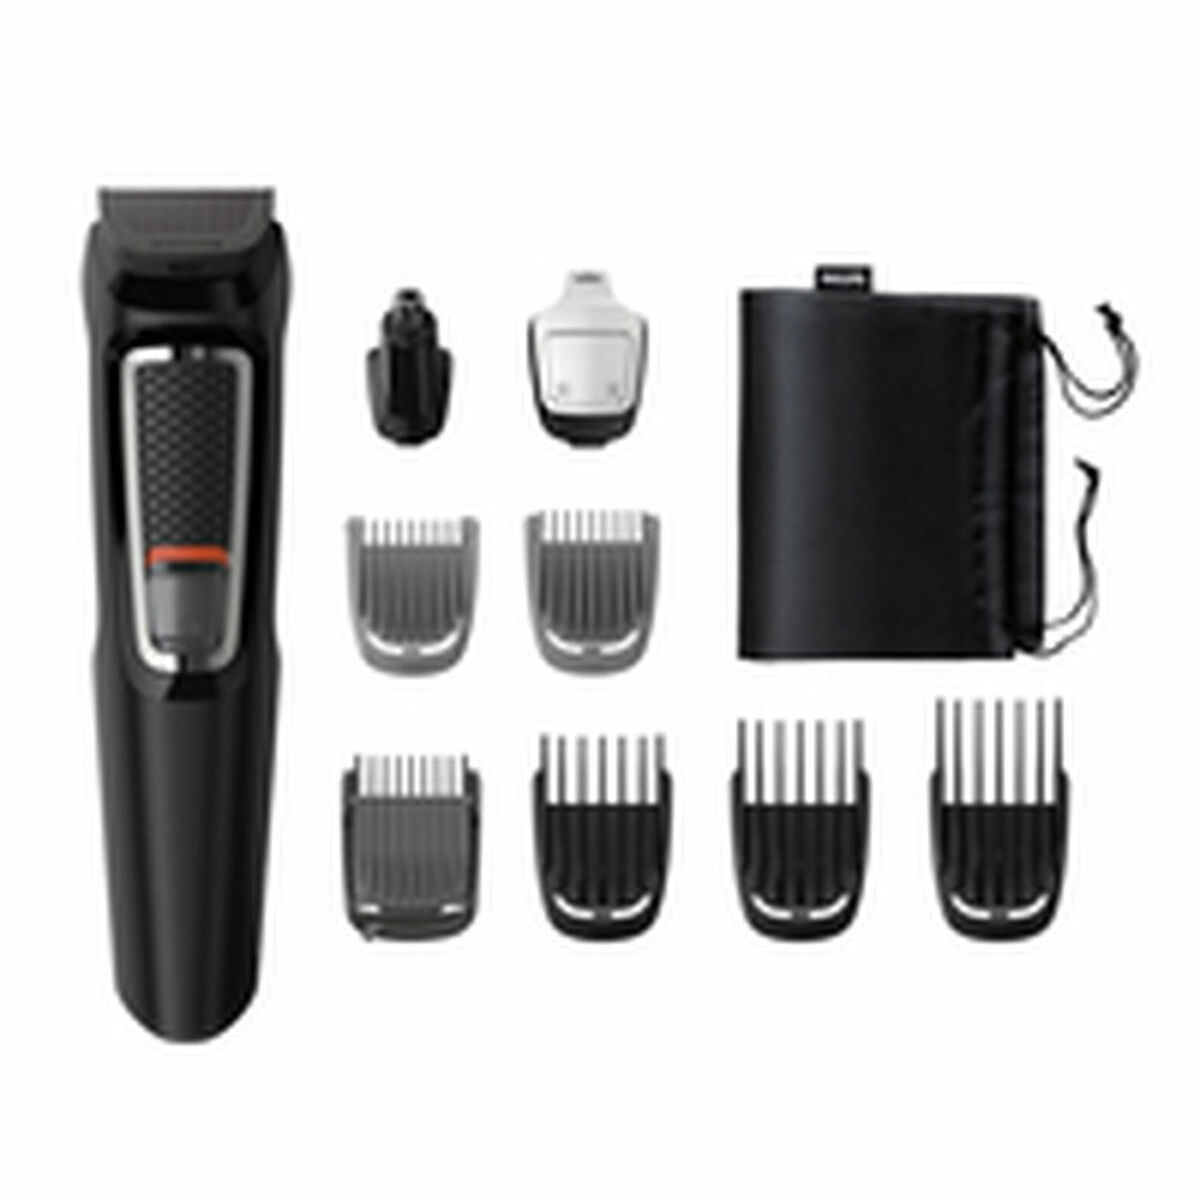 Ηλεκτρική Επαναφορτιζόμενη Ξυριστική Μηχανή Philips Cara y cabello 9 en 1 con 9 herramientas